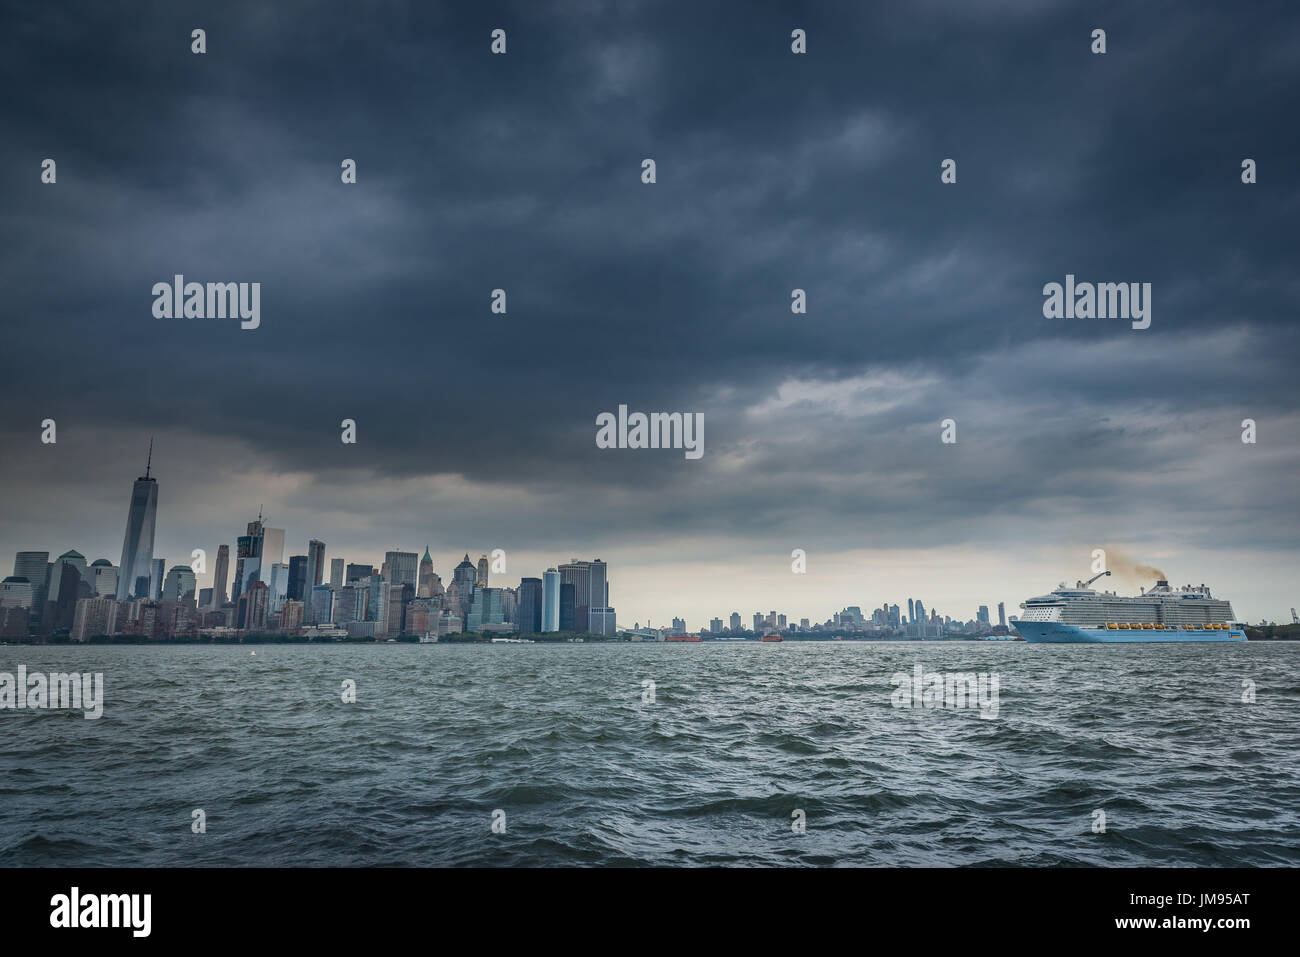 Fragoroso scure nuvole temporalesche sindone oltre la parte inferiore dello skyline di Manhattan e un passeggero con una nave da crociera sul fiume Hudson in New York New York, Stati Uniti d'America Foto Stock